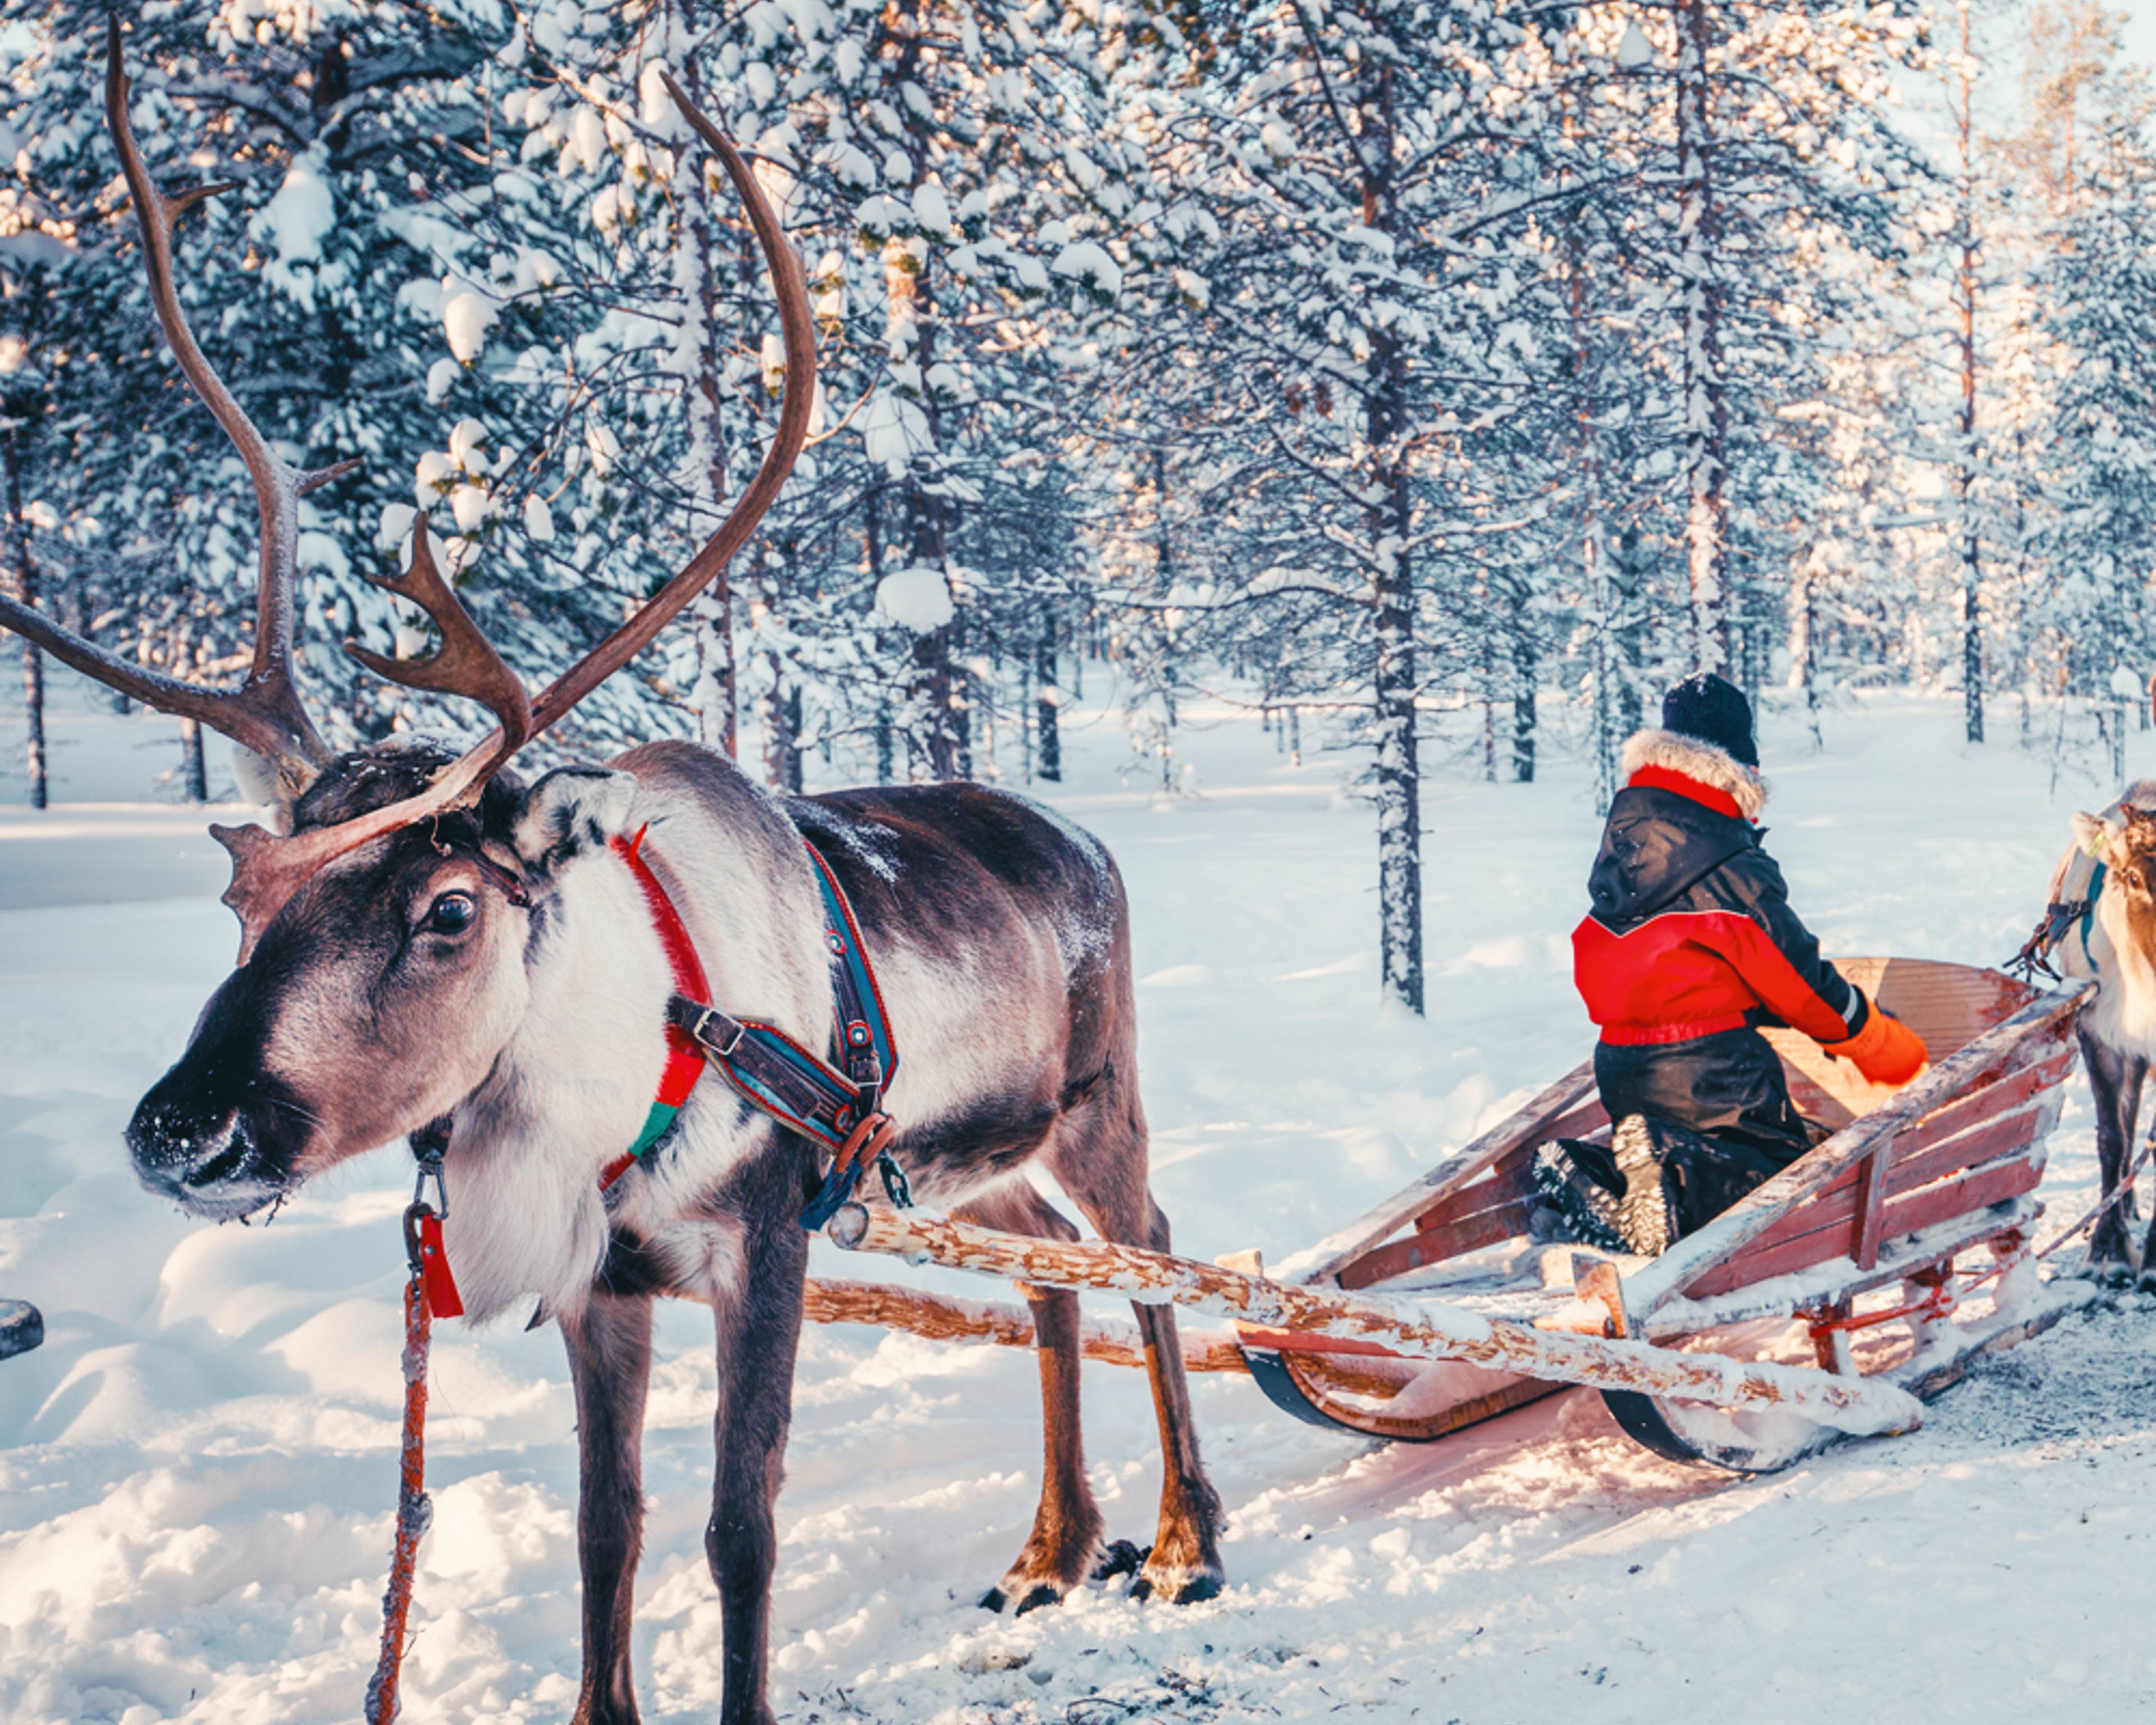 Crea il tuo viaggio in Finlandia in inverno, 100% su misura